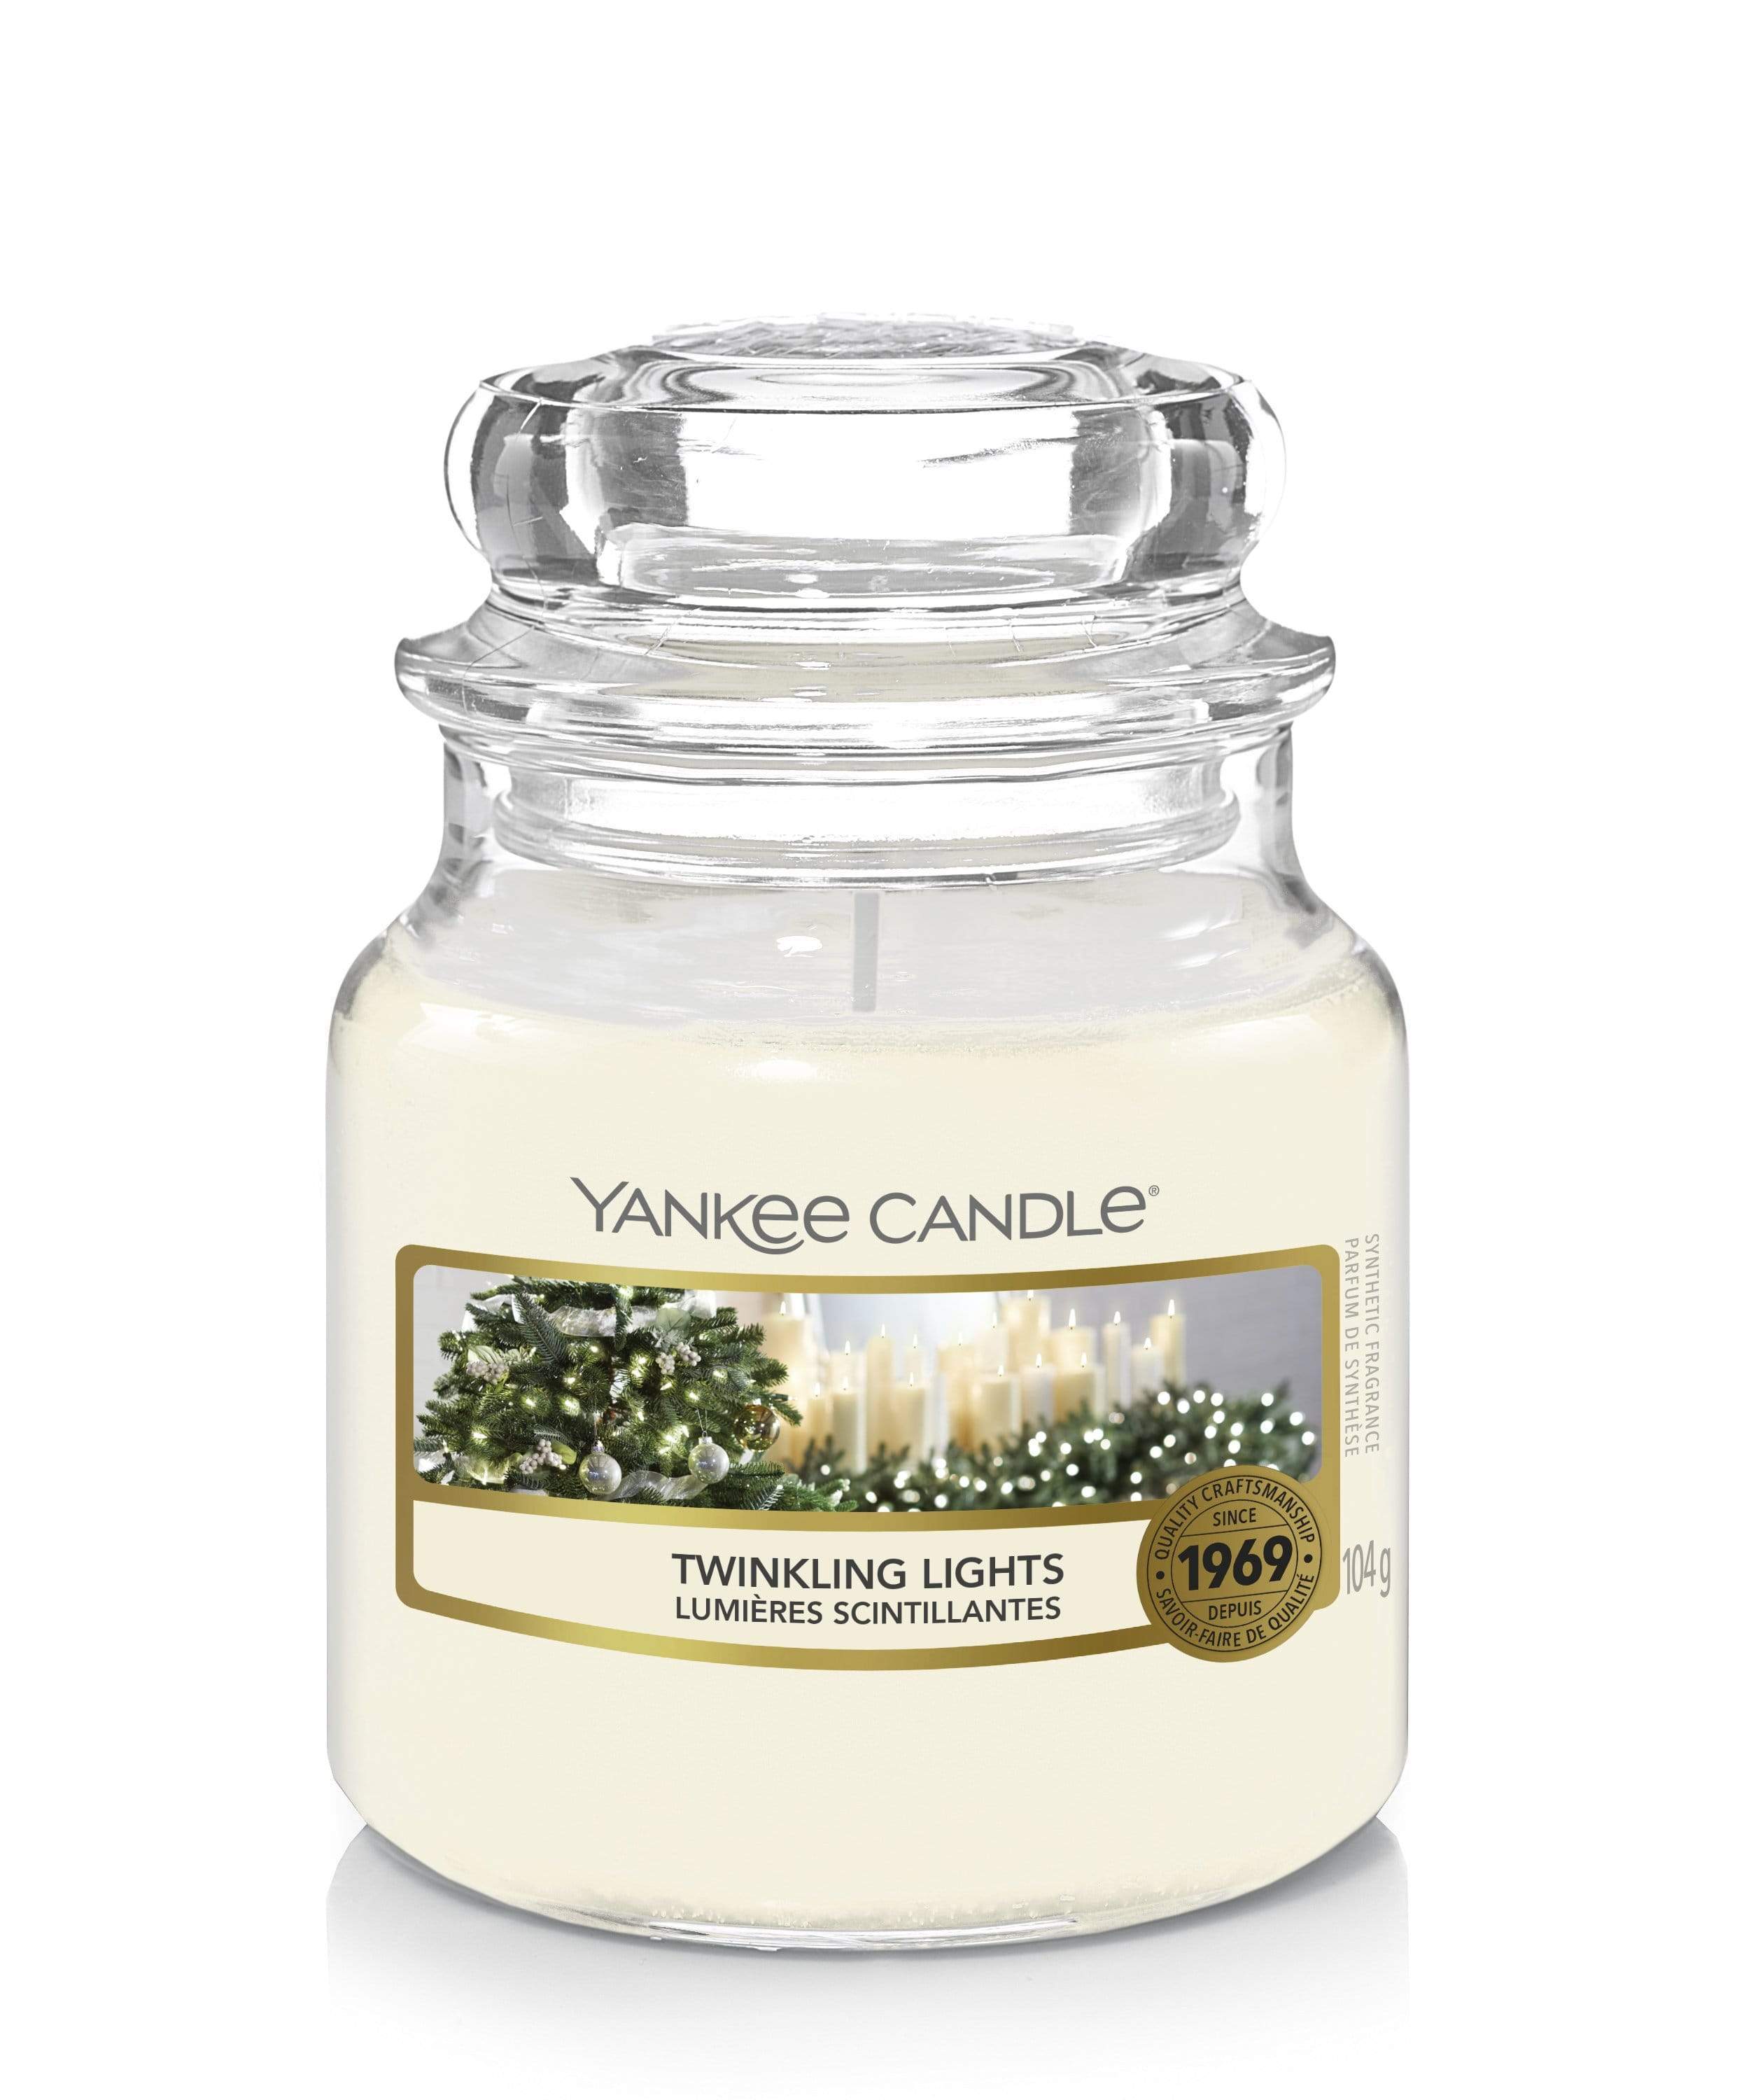 Yankee Candle Small Jar Holiday Gift Set 